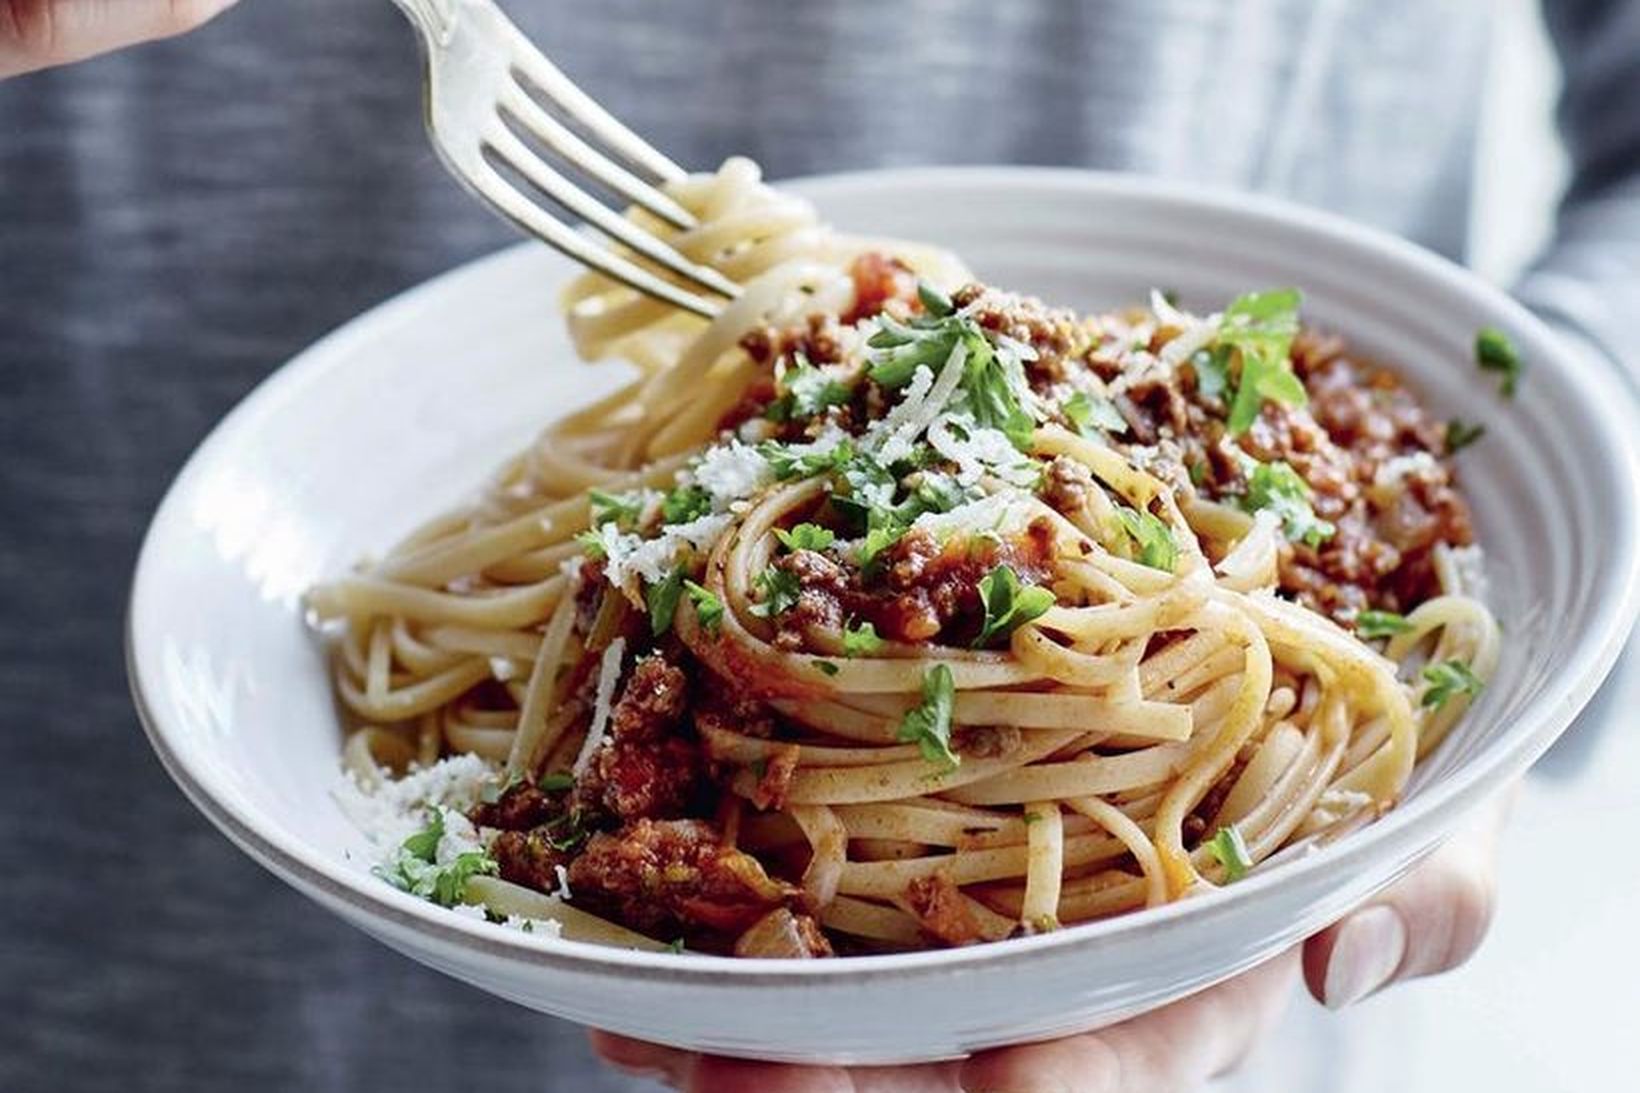 Spaghettí og kjötsósa er algjört lostæti.